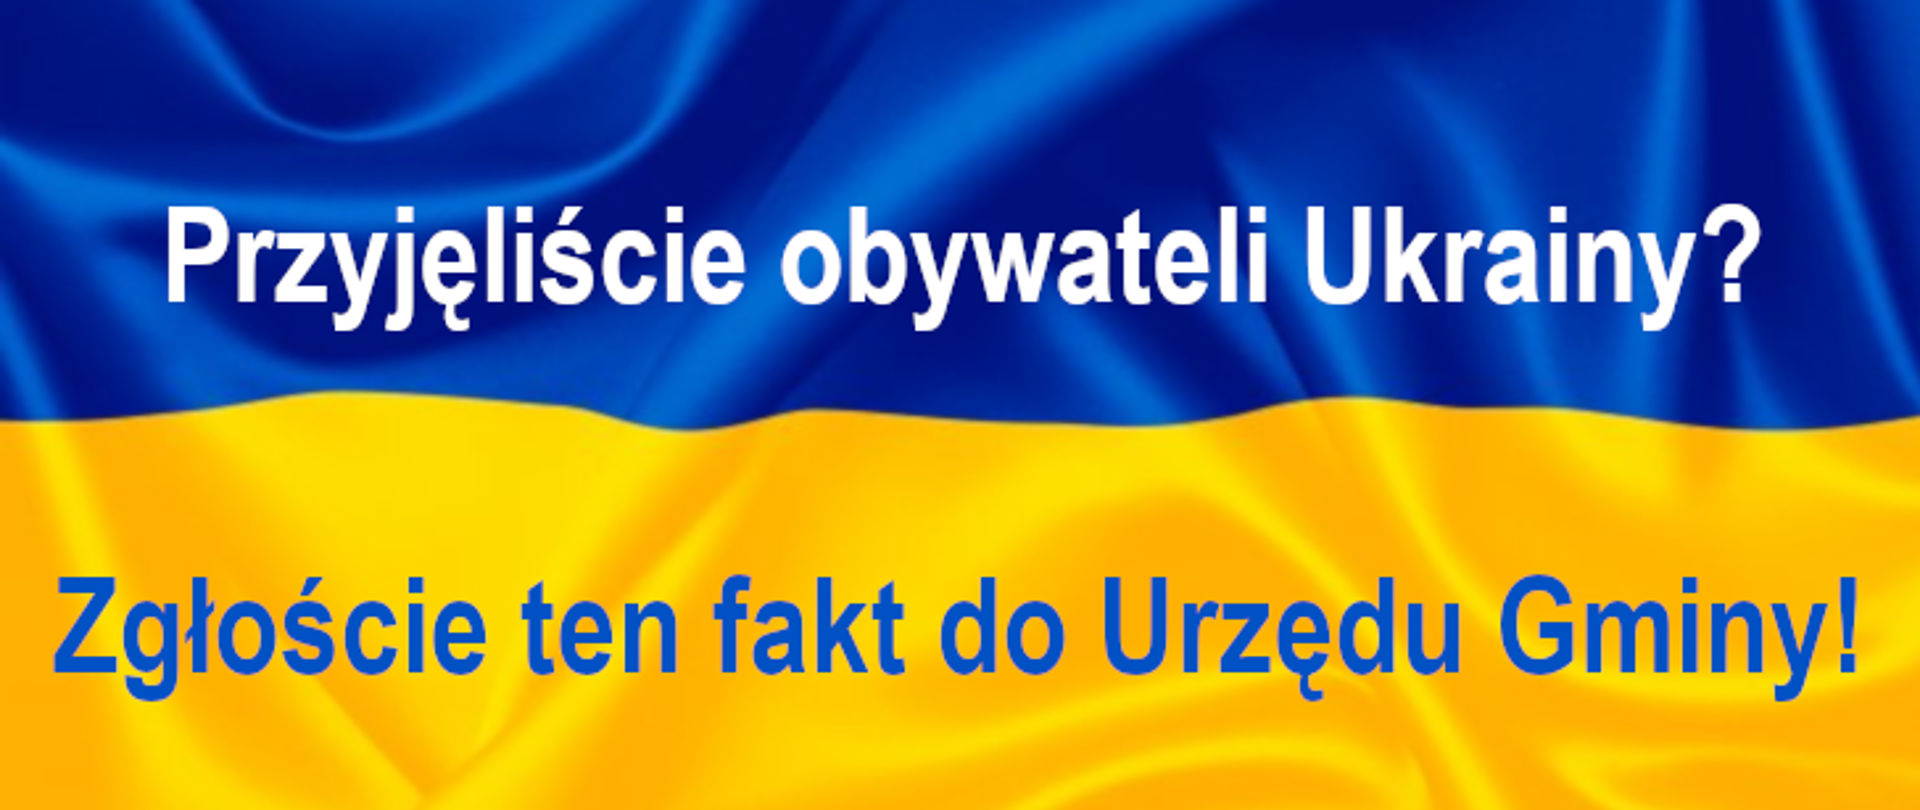 Flaga Ukrainy niebiesko-żółta z napisami